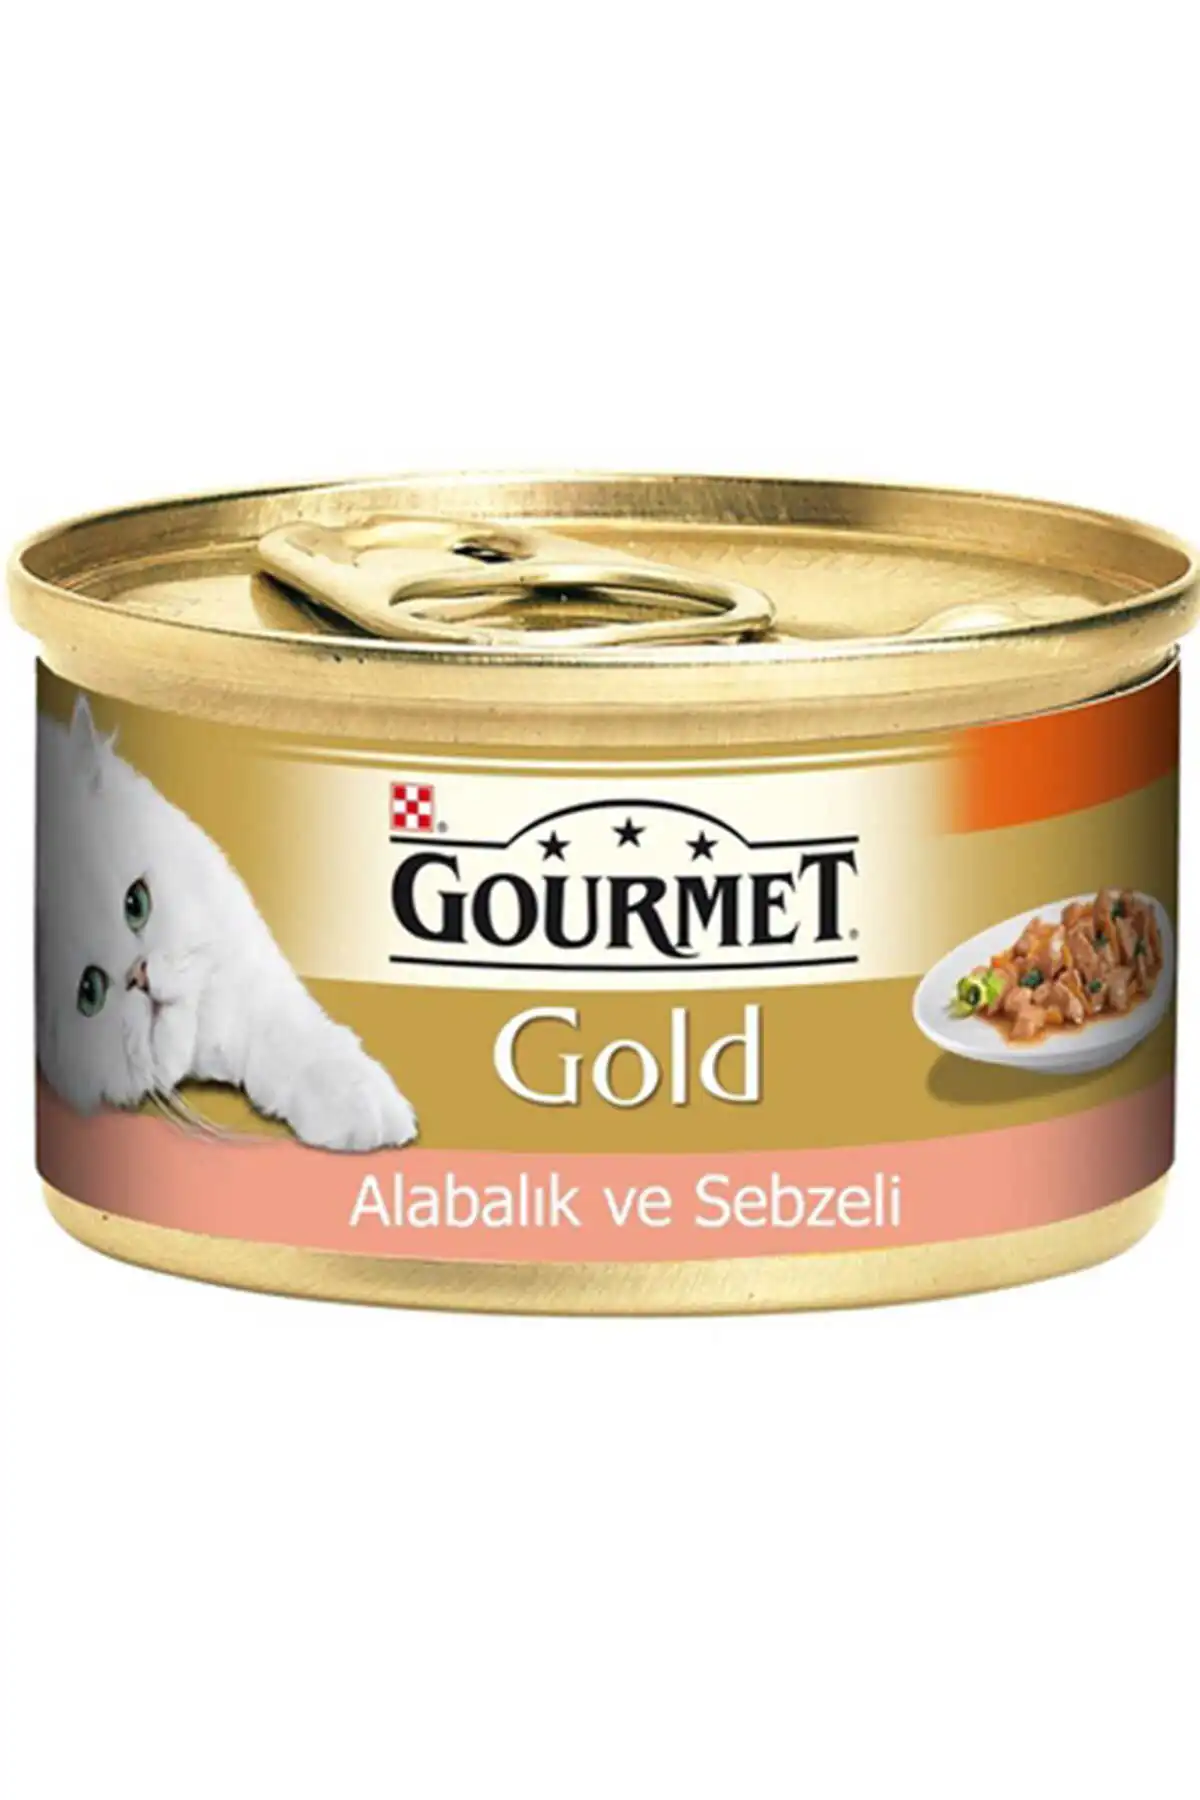 Gourmet Gold Sebze ve Alabalık Parça Et Soslu Yetişkin Kedi Konservesi 85gr